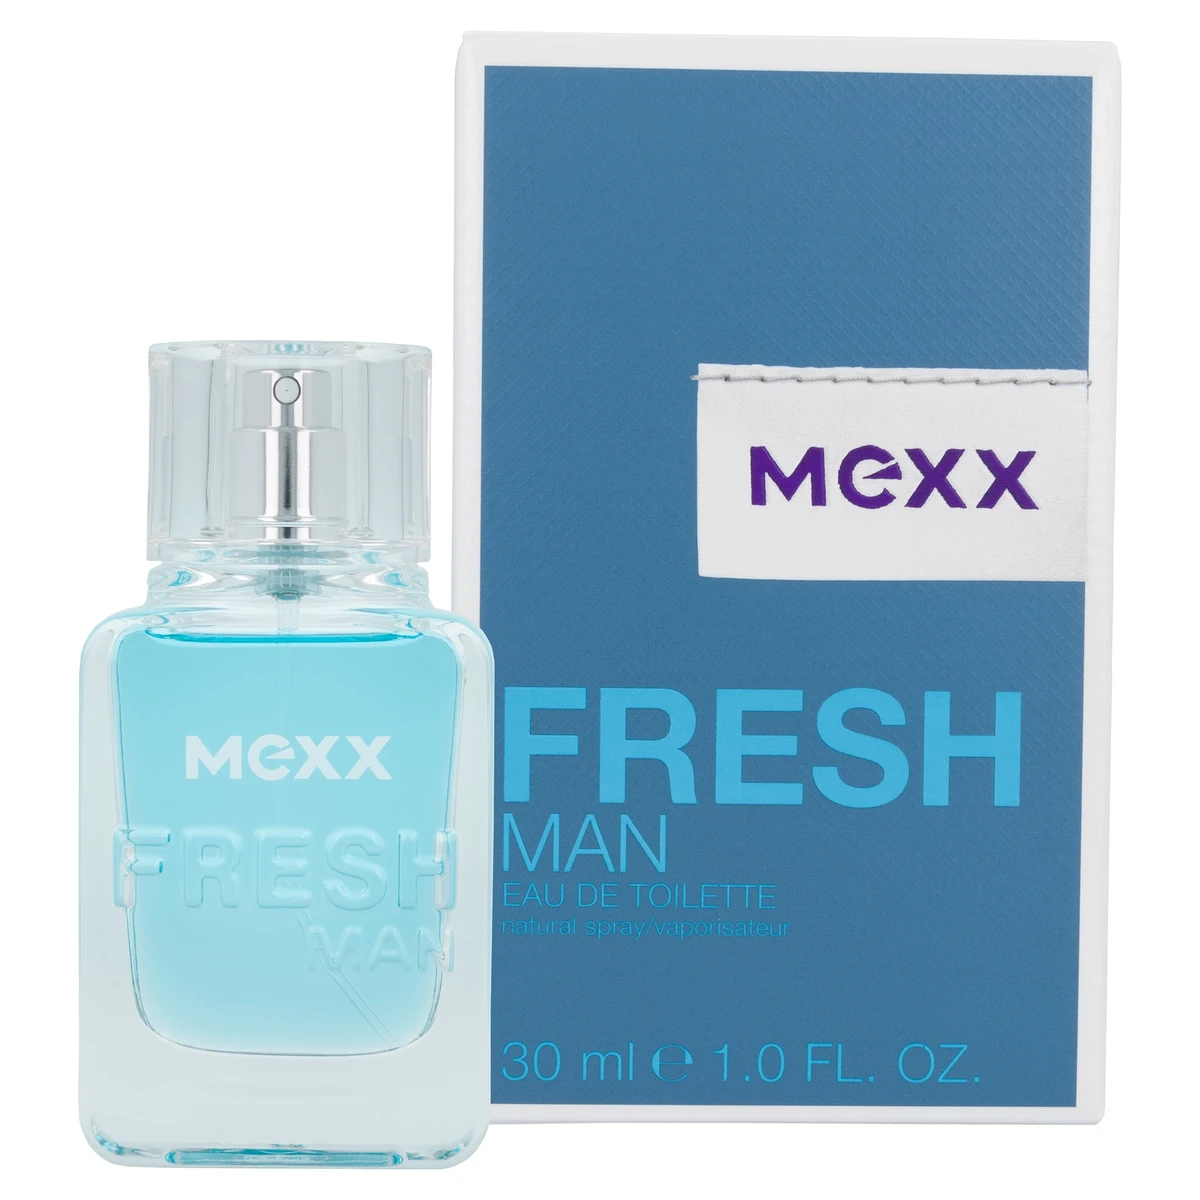 Mexx Fresh férfi edt, 30 ml